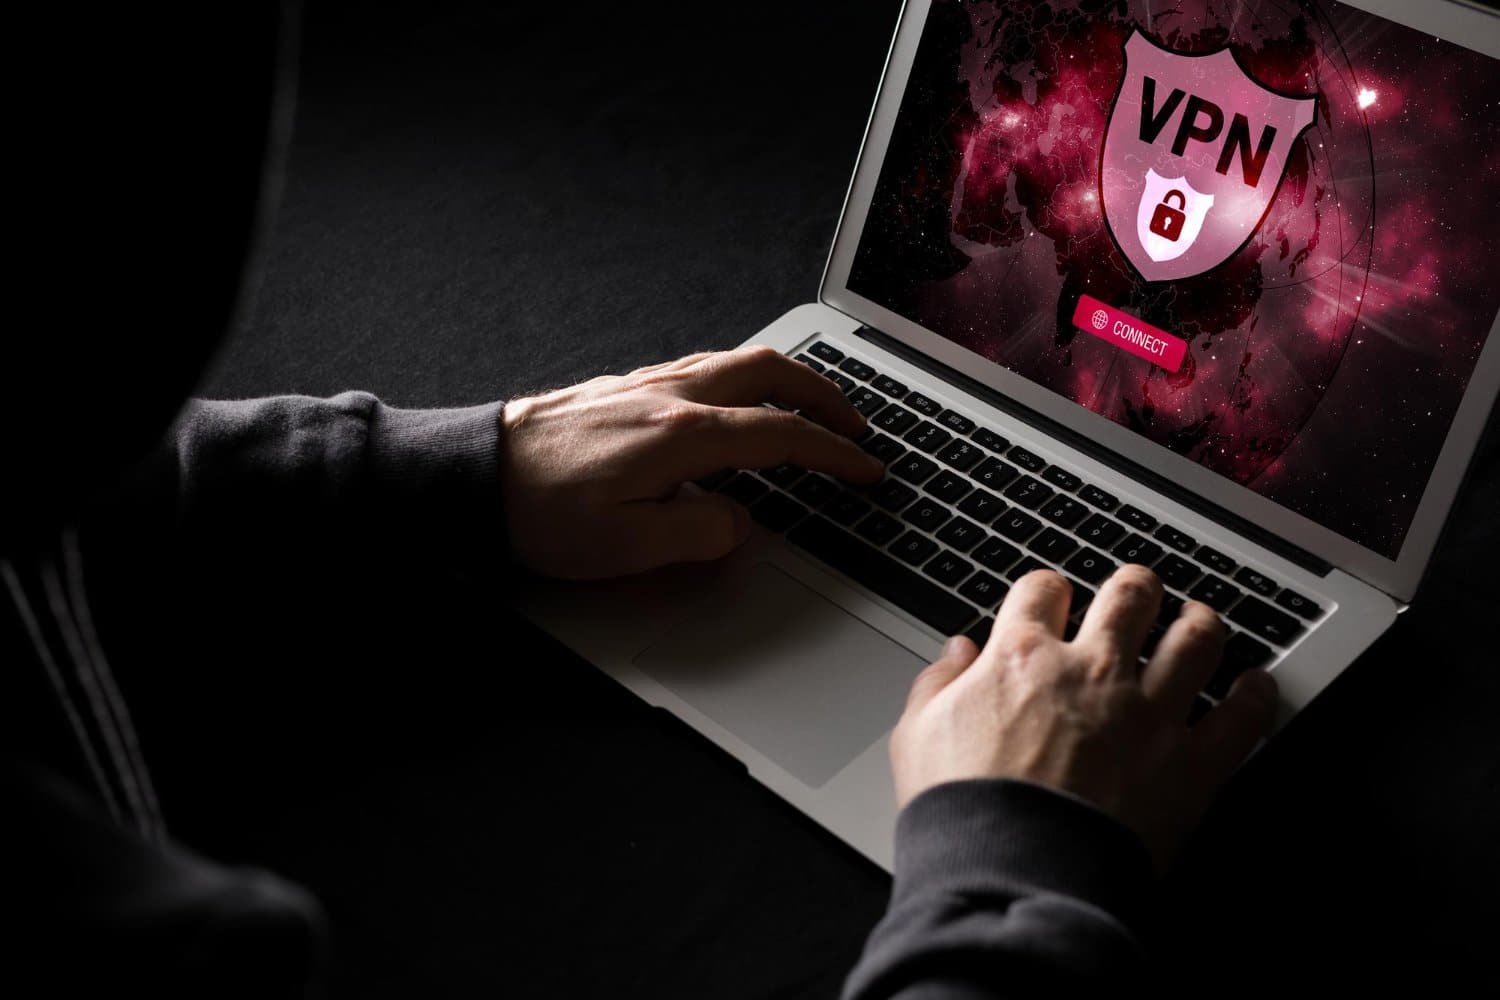 VPN Legislation and Privacy Concerns